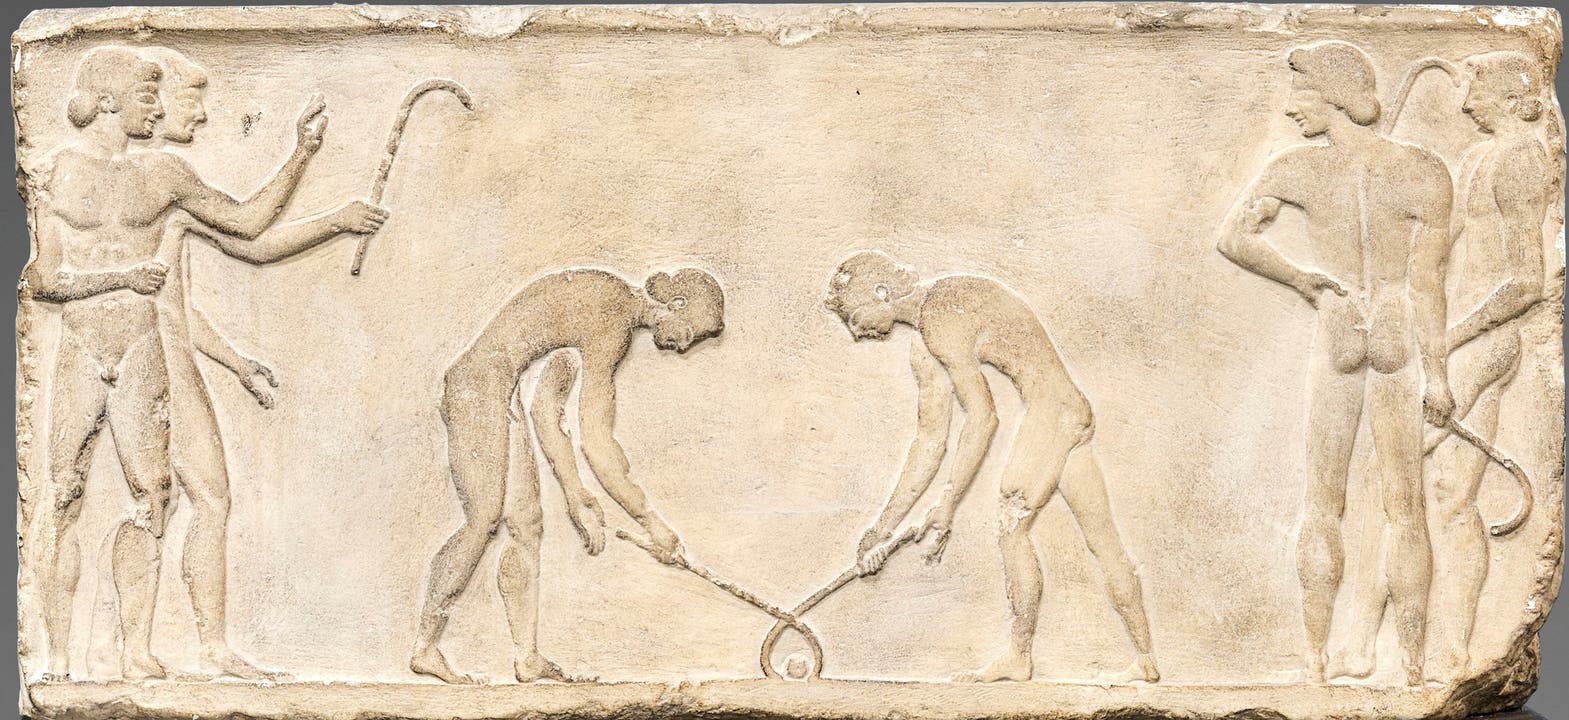 Dieses aussergewöhnliche Relief bezeugt als einziges für die Antike eine Art Hockey-Spiel, wohl das in den Schriftquellen überlieferte keretizein. Relief von einer Statuenbasis; Marmor; um 510/500 v. Chr.; Athen, Archäologisches Nationalmuseum (Original); Abguss